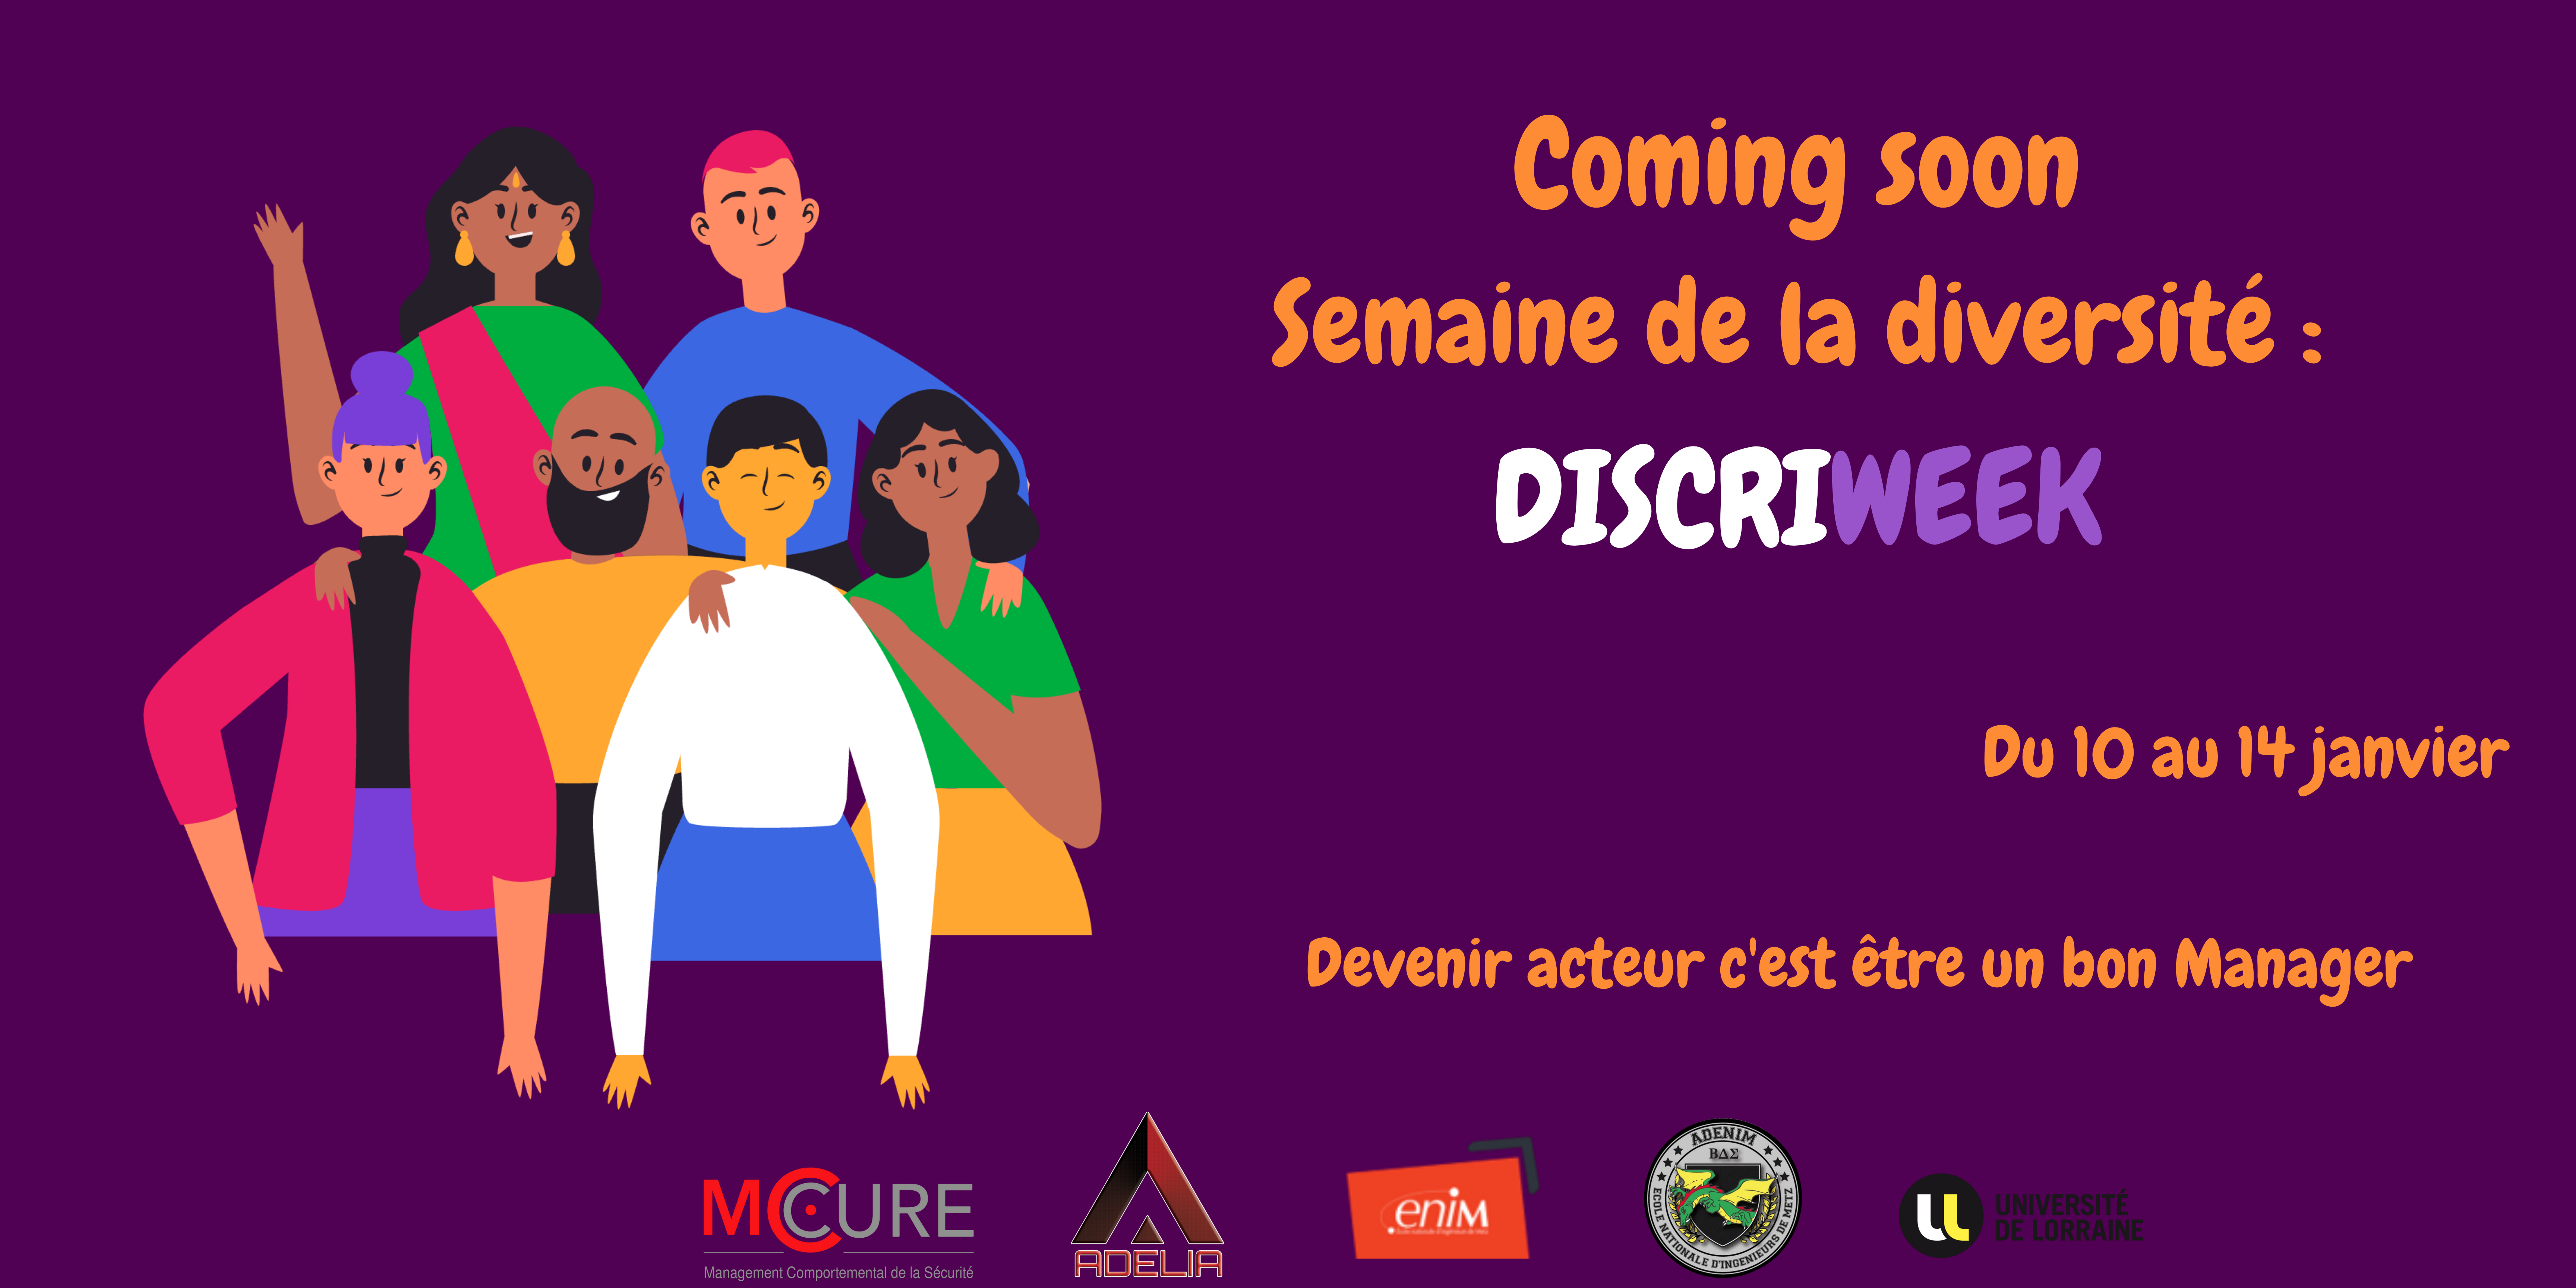 « DISCRIWEEK : semaine de l’égalité » – ENIM